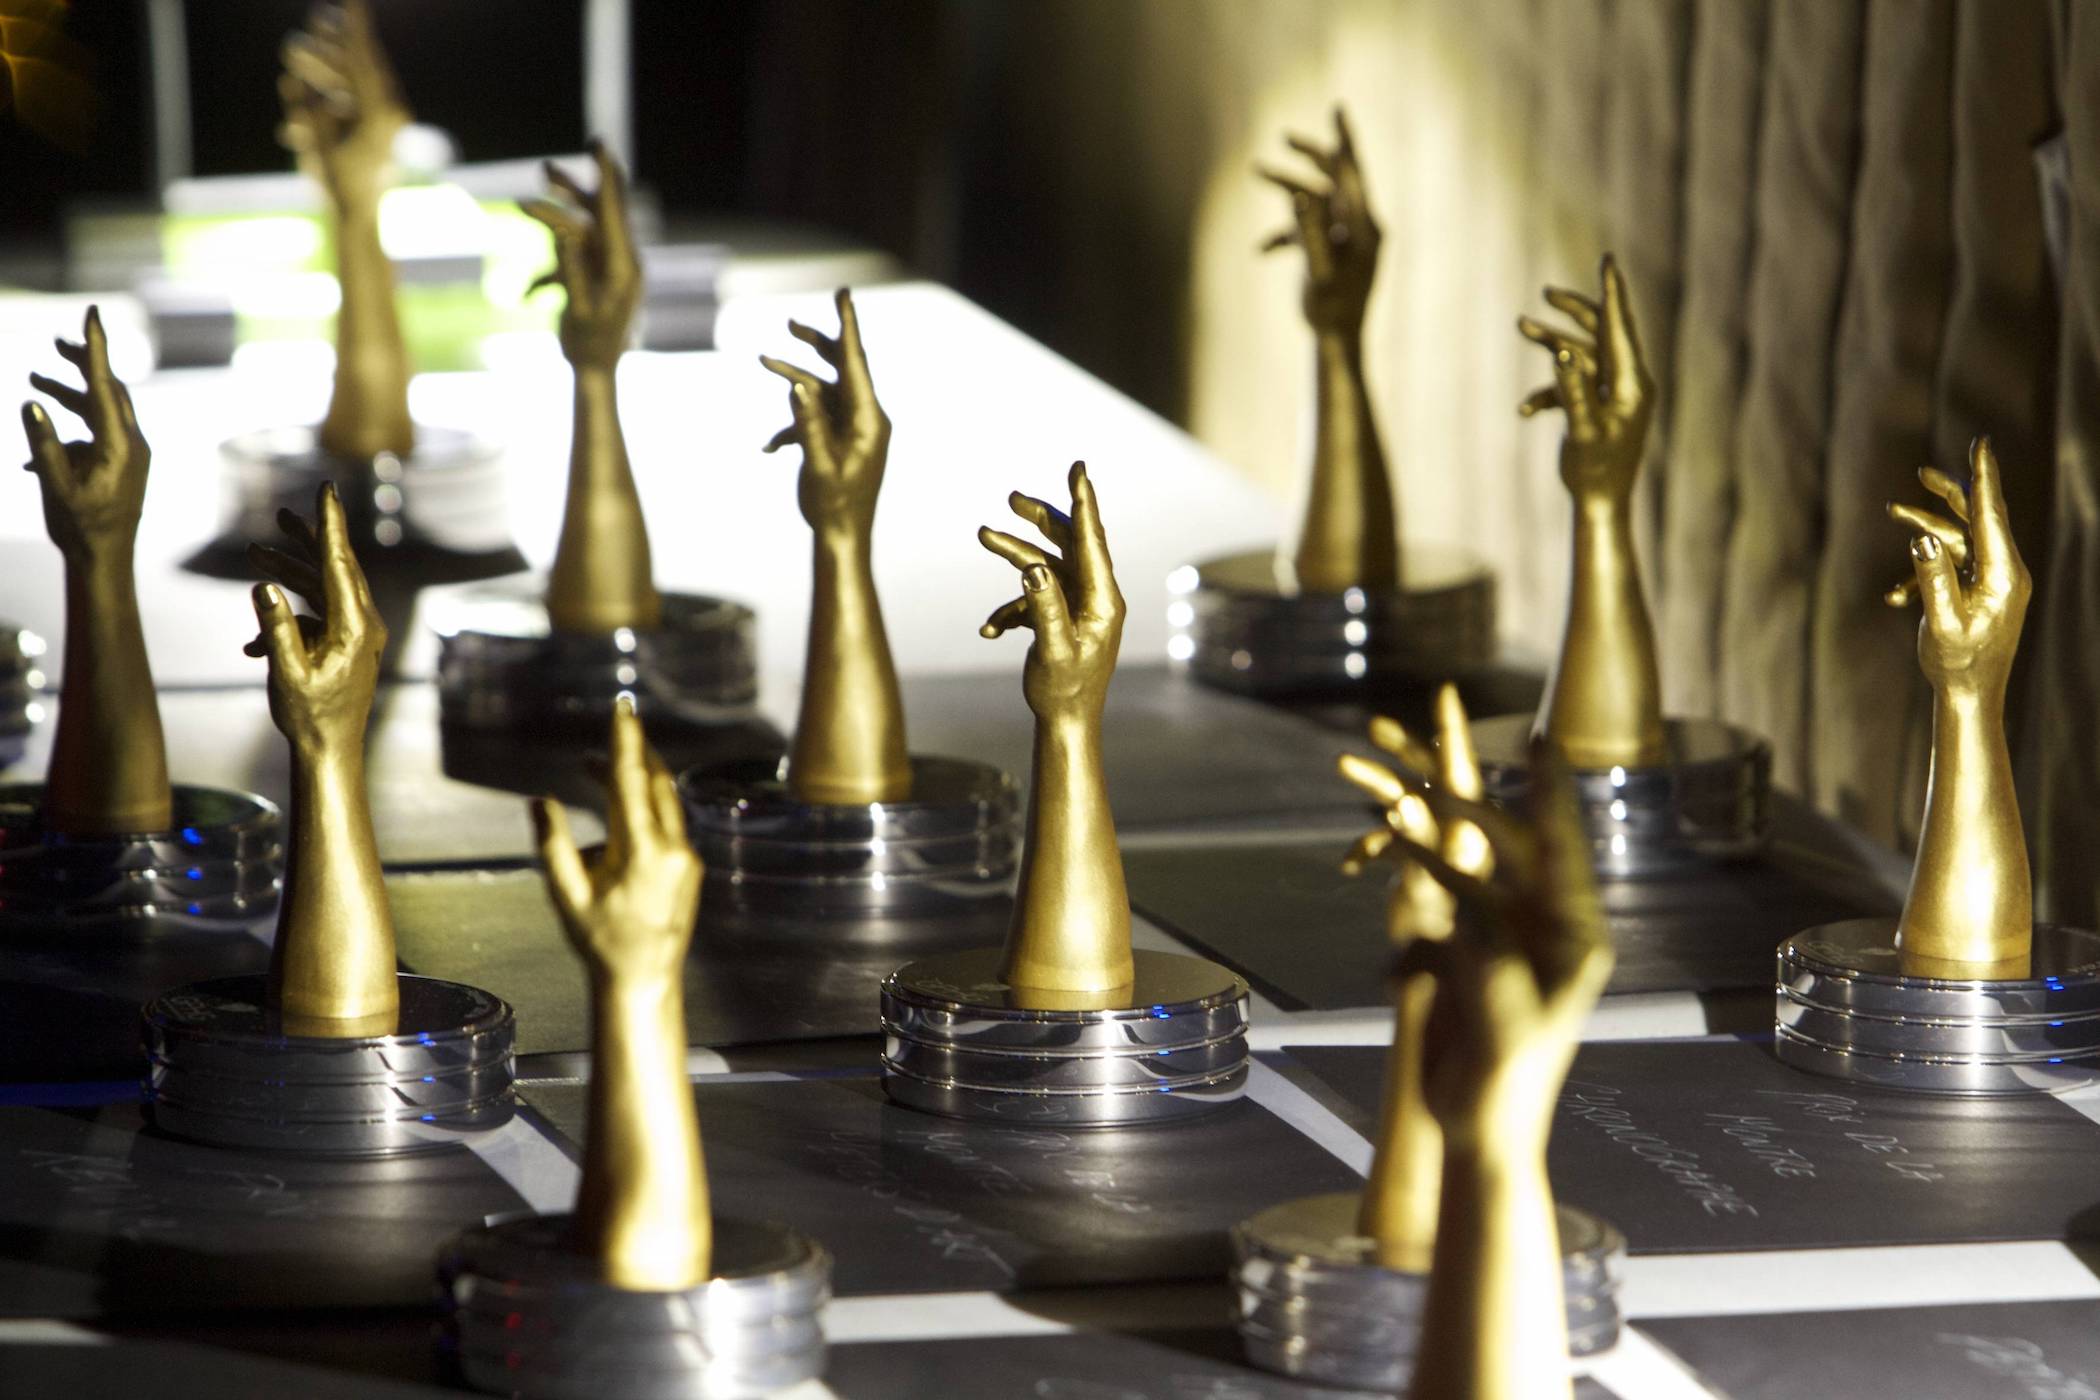 20 năm GPHG - Nhìn lại 19 chiếc đồng hồ từng đoạt giải Oscar cho đến nay